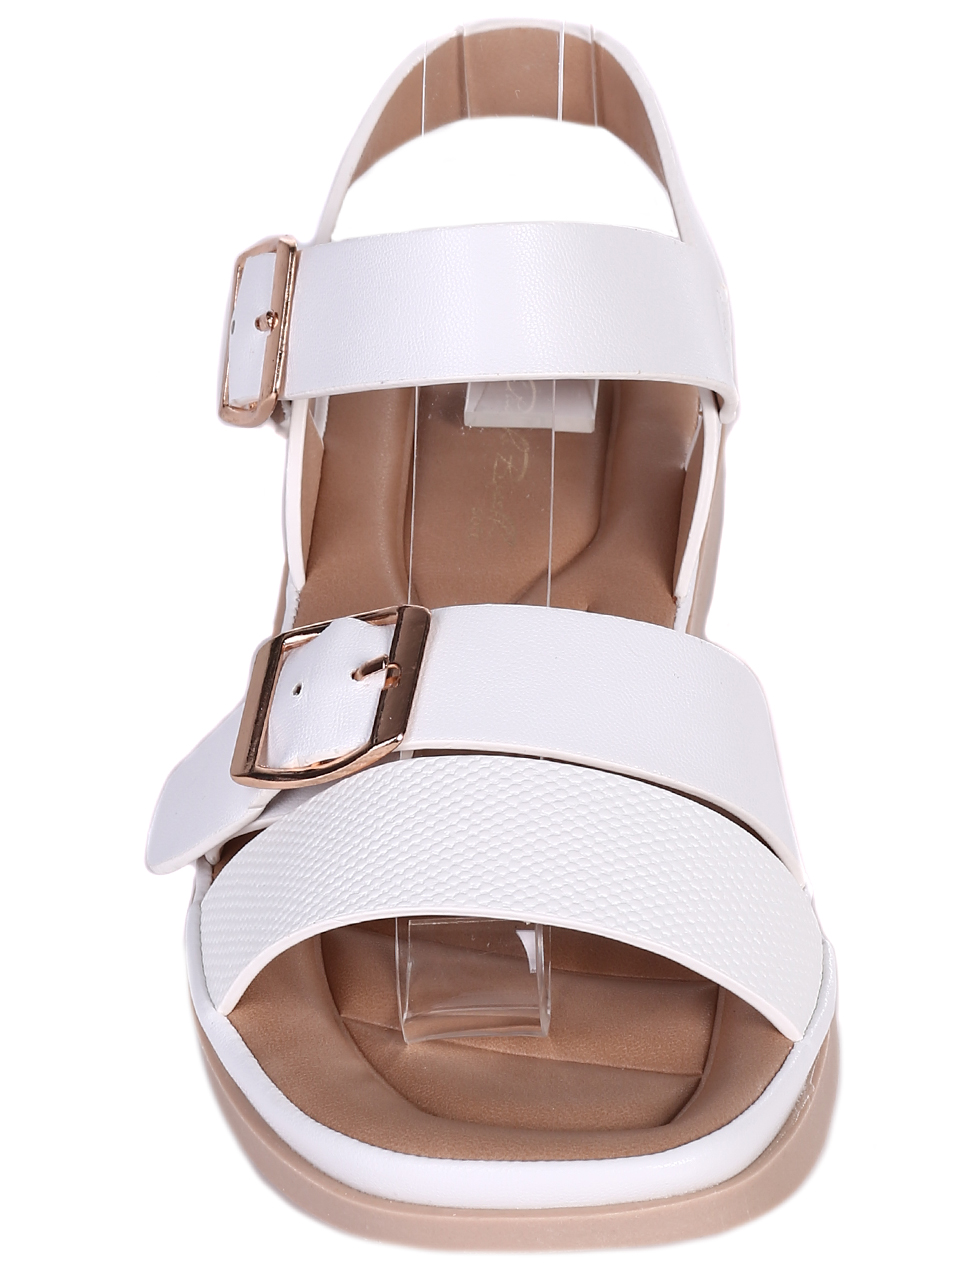 Ежедневни дамски равни сандали в бяло 4H-23116 white